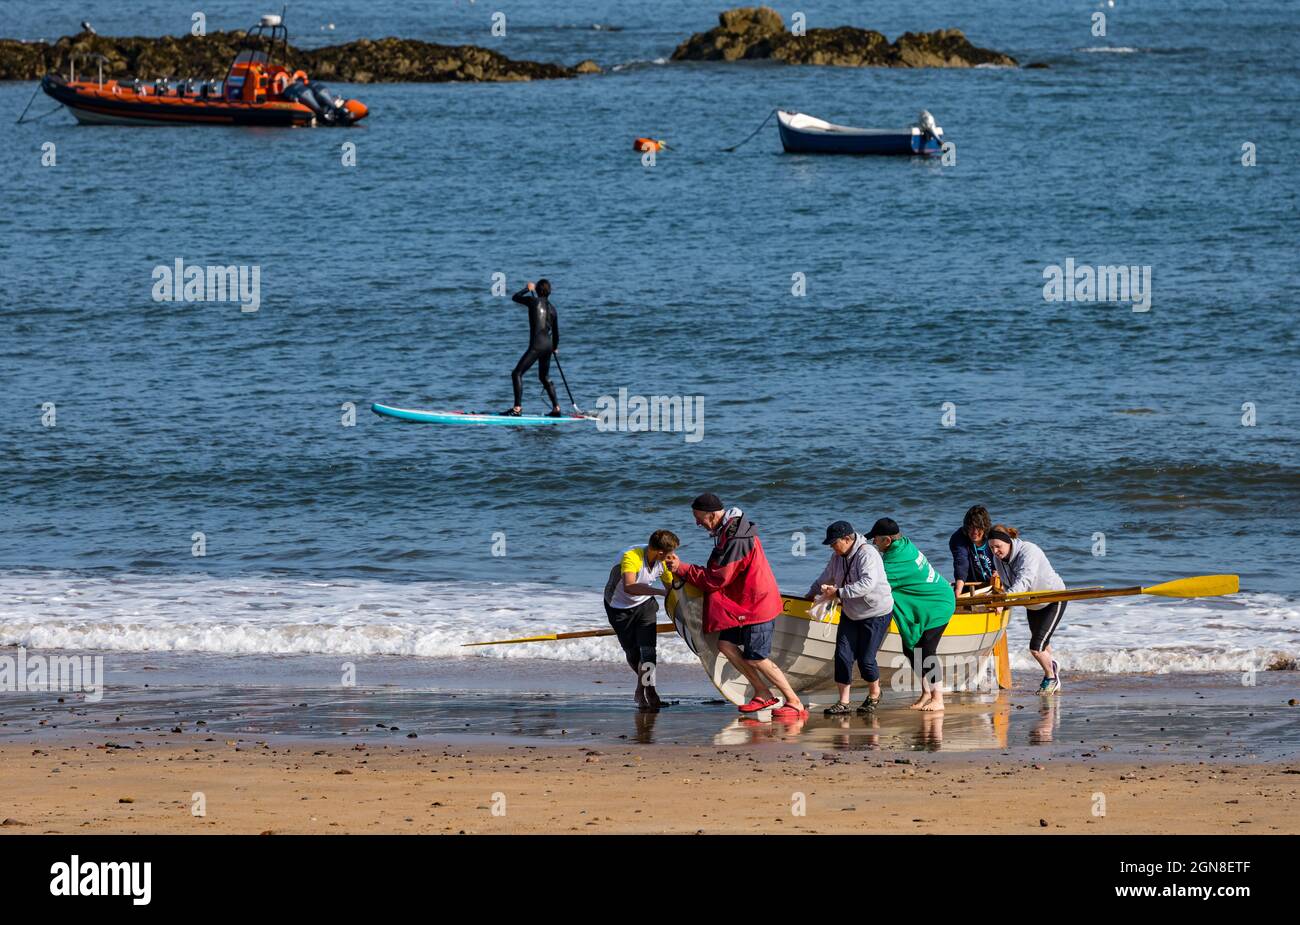 Équipe côtière d'aviron plage St Ayle's Skiff Boat Regatta, North Berwick, East Lothian, Écosse, Royaume-Uni Banque D'Images